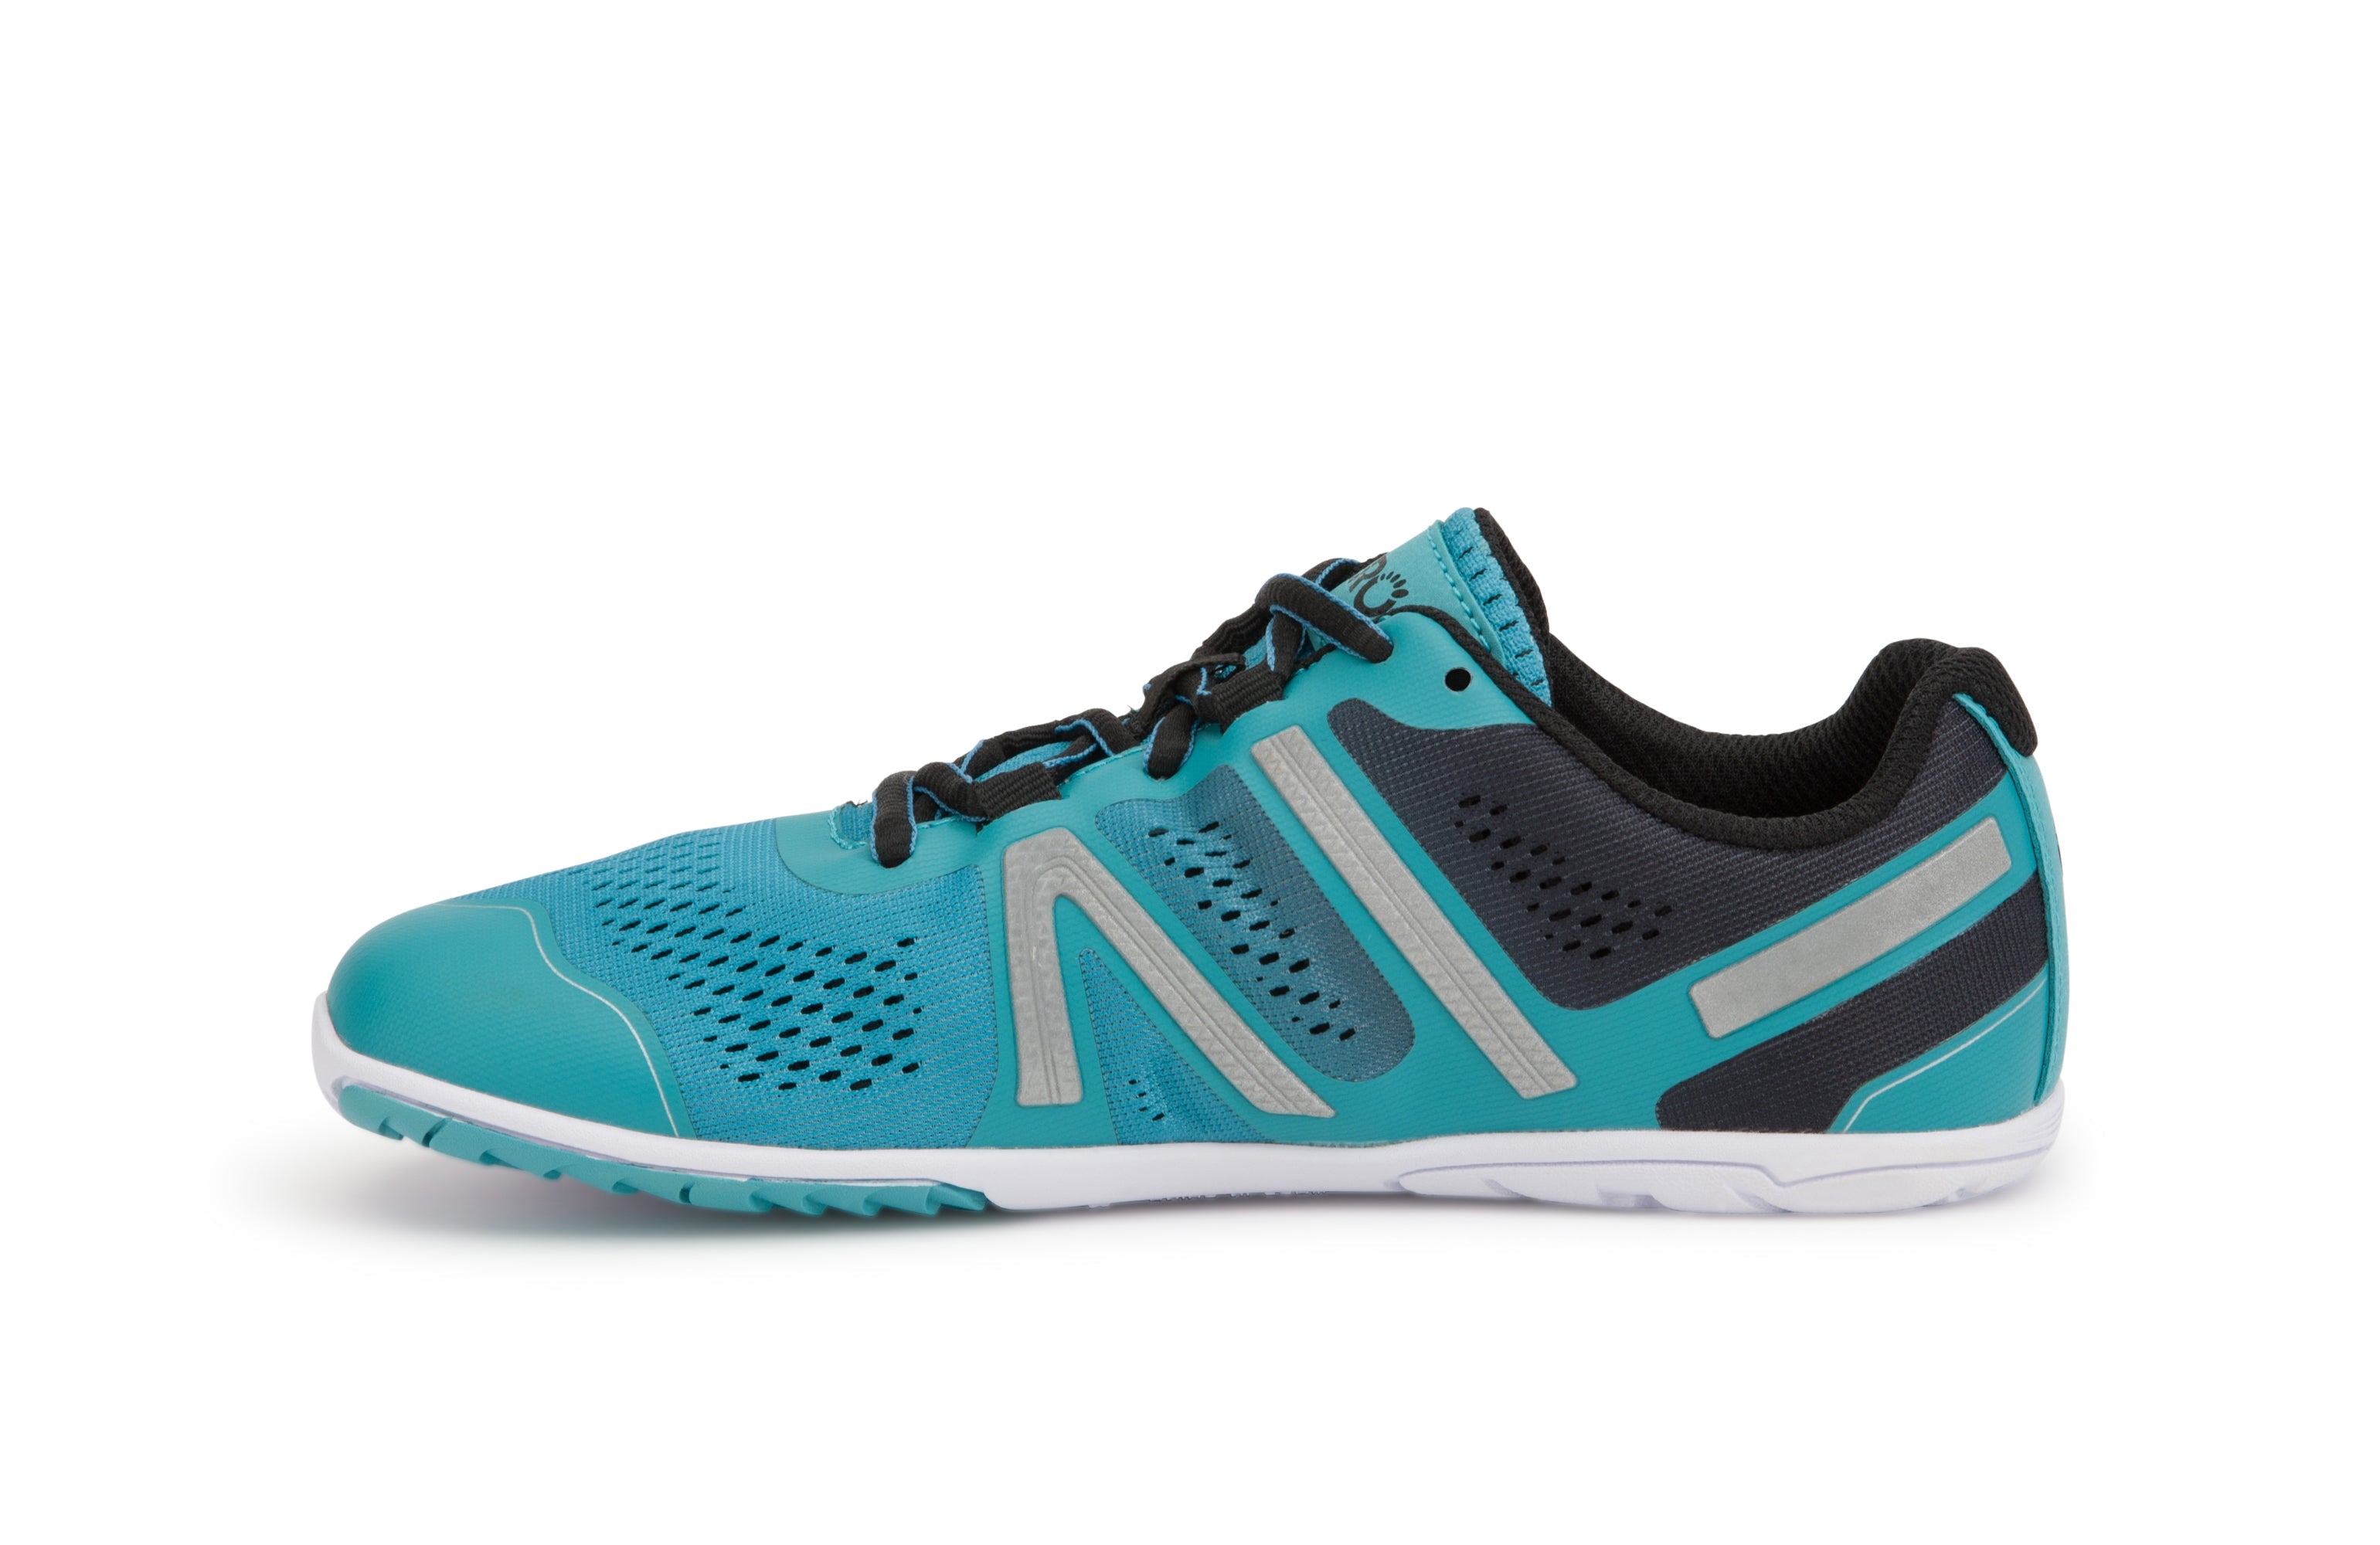 Xero Shoes HFS Womens barfods træningssko/løbesko til kvinder i farven porcelain blue, inderside